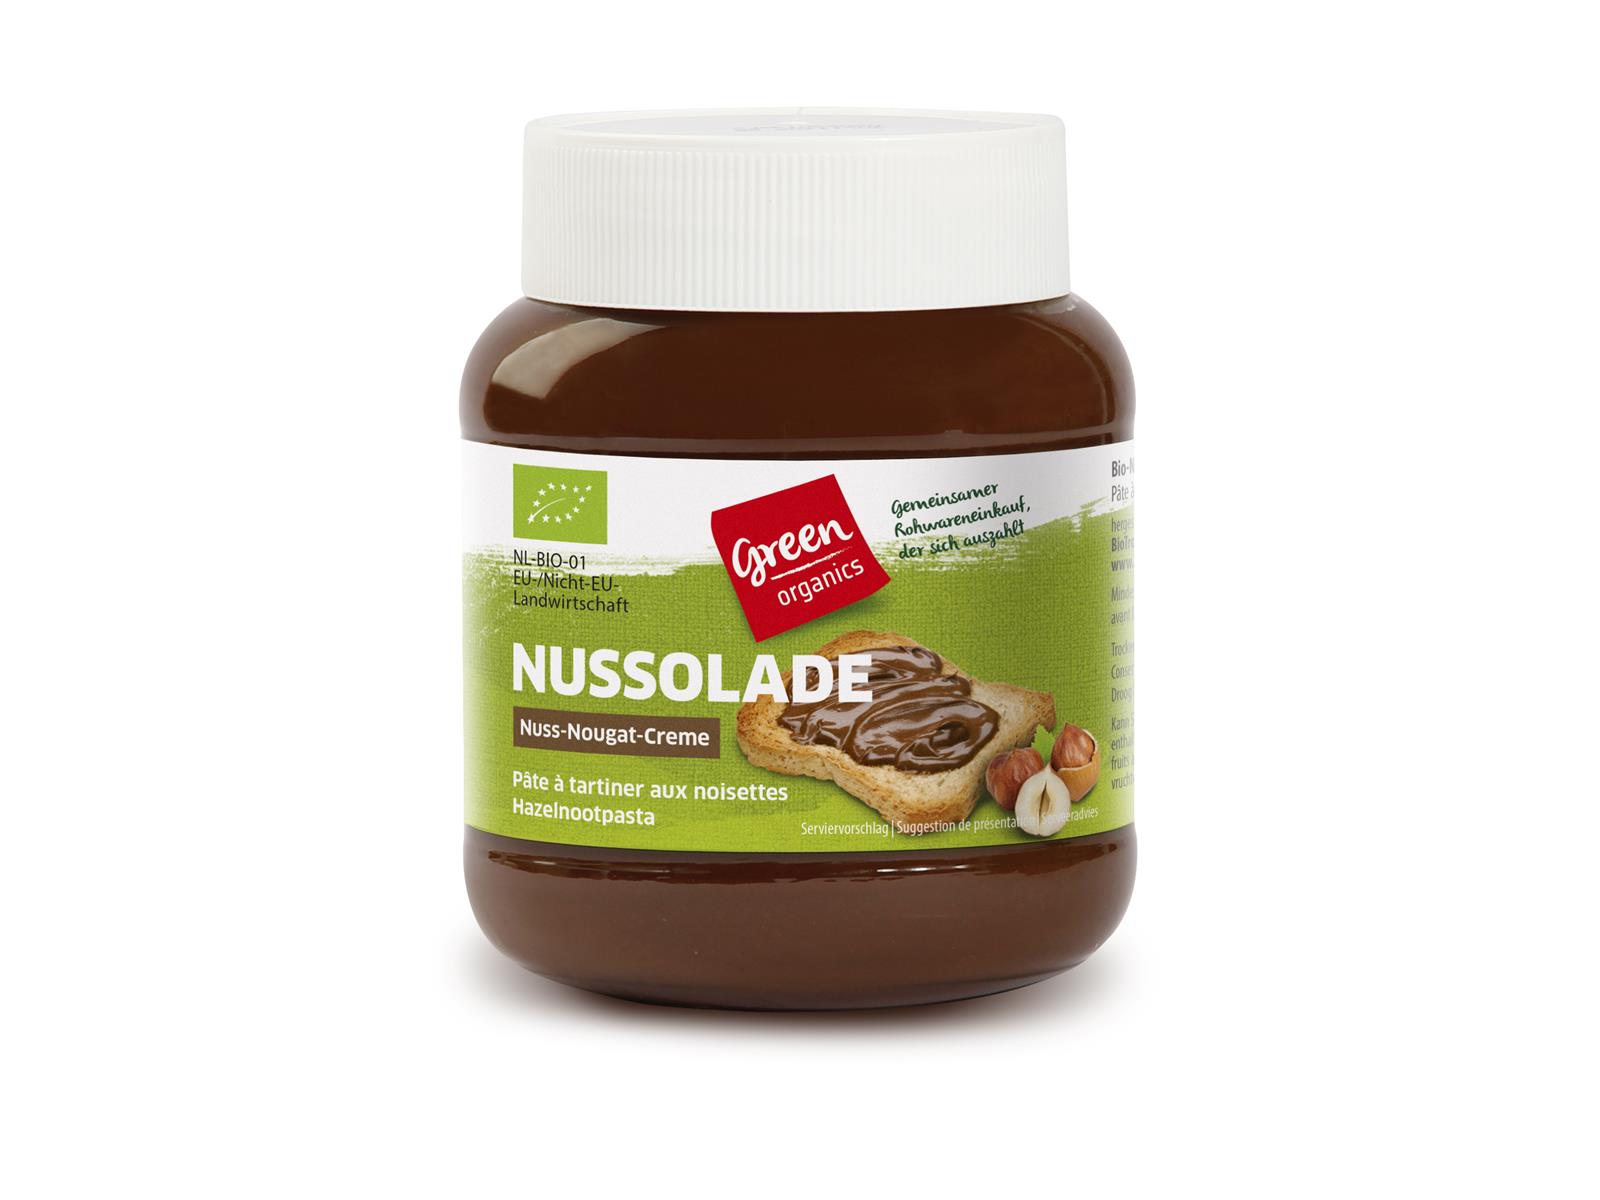 greenorganics Nussolade Nuss-Nougat-Creme 400 g